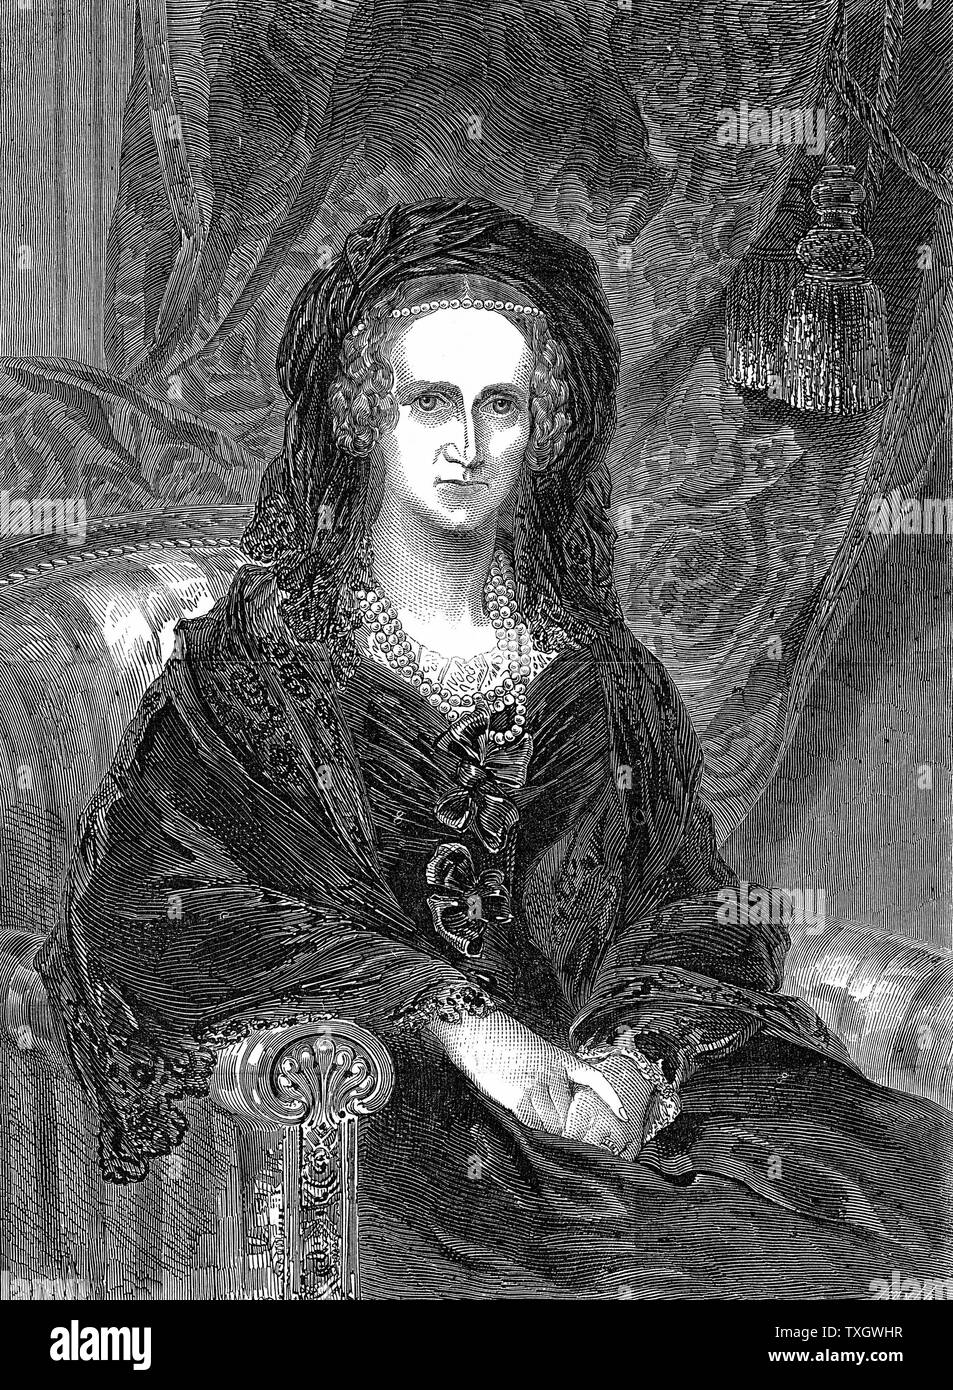 Adelaide di Sassonia Coburgo - Gotha Meiningen (1792-1849) tedesco-nato regina consorte di Guglielmo IV di Gran Bretagna (1830-37). Incisione verticale pubblicato London 1849 incisione di Adelaide come una vedova Foto Stock